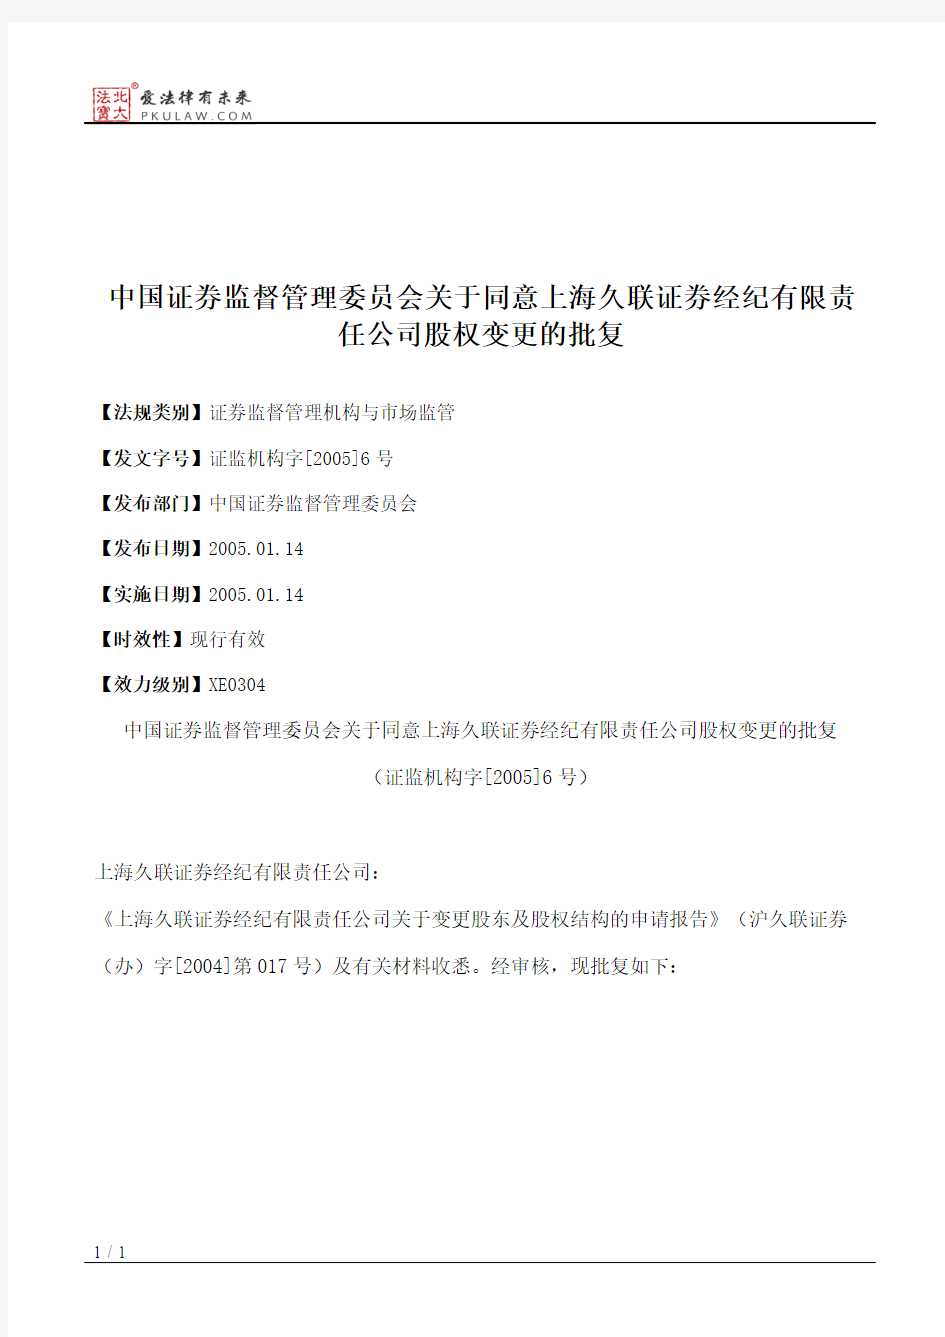 中国证券监督管理委员会关于同意上海久联证券经纪有限责任公司股